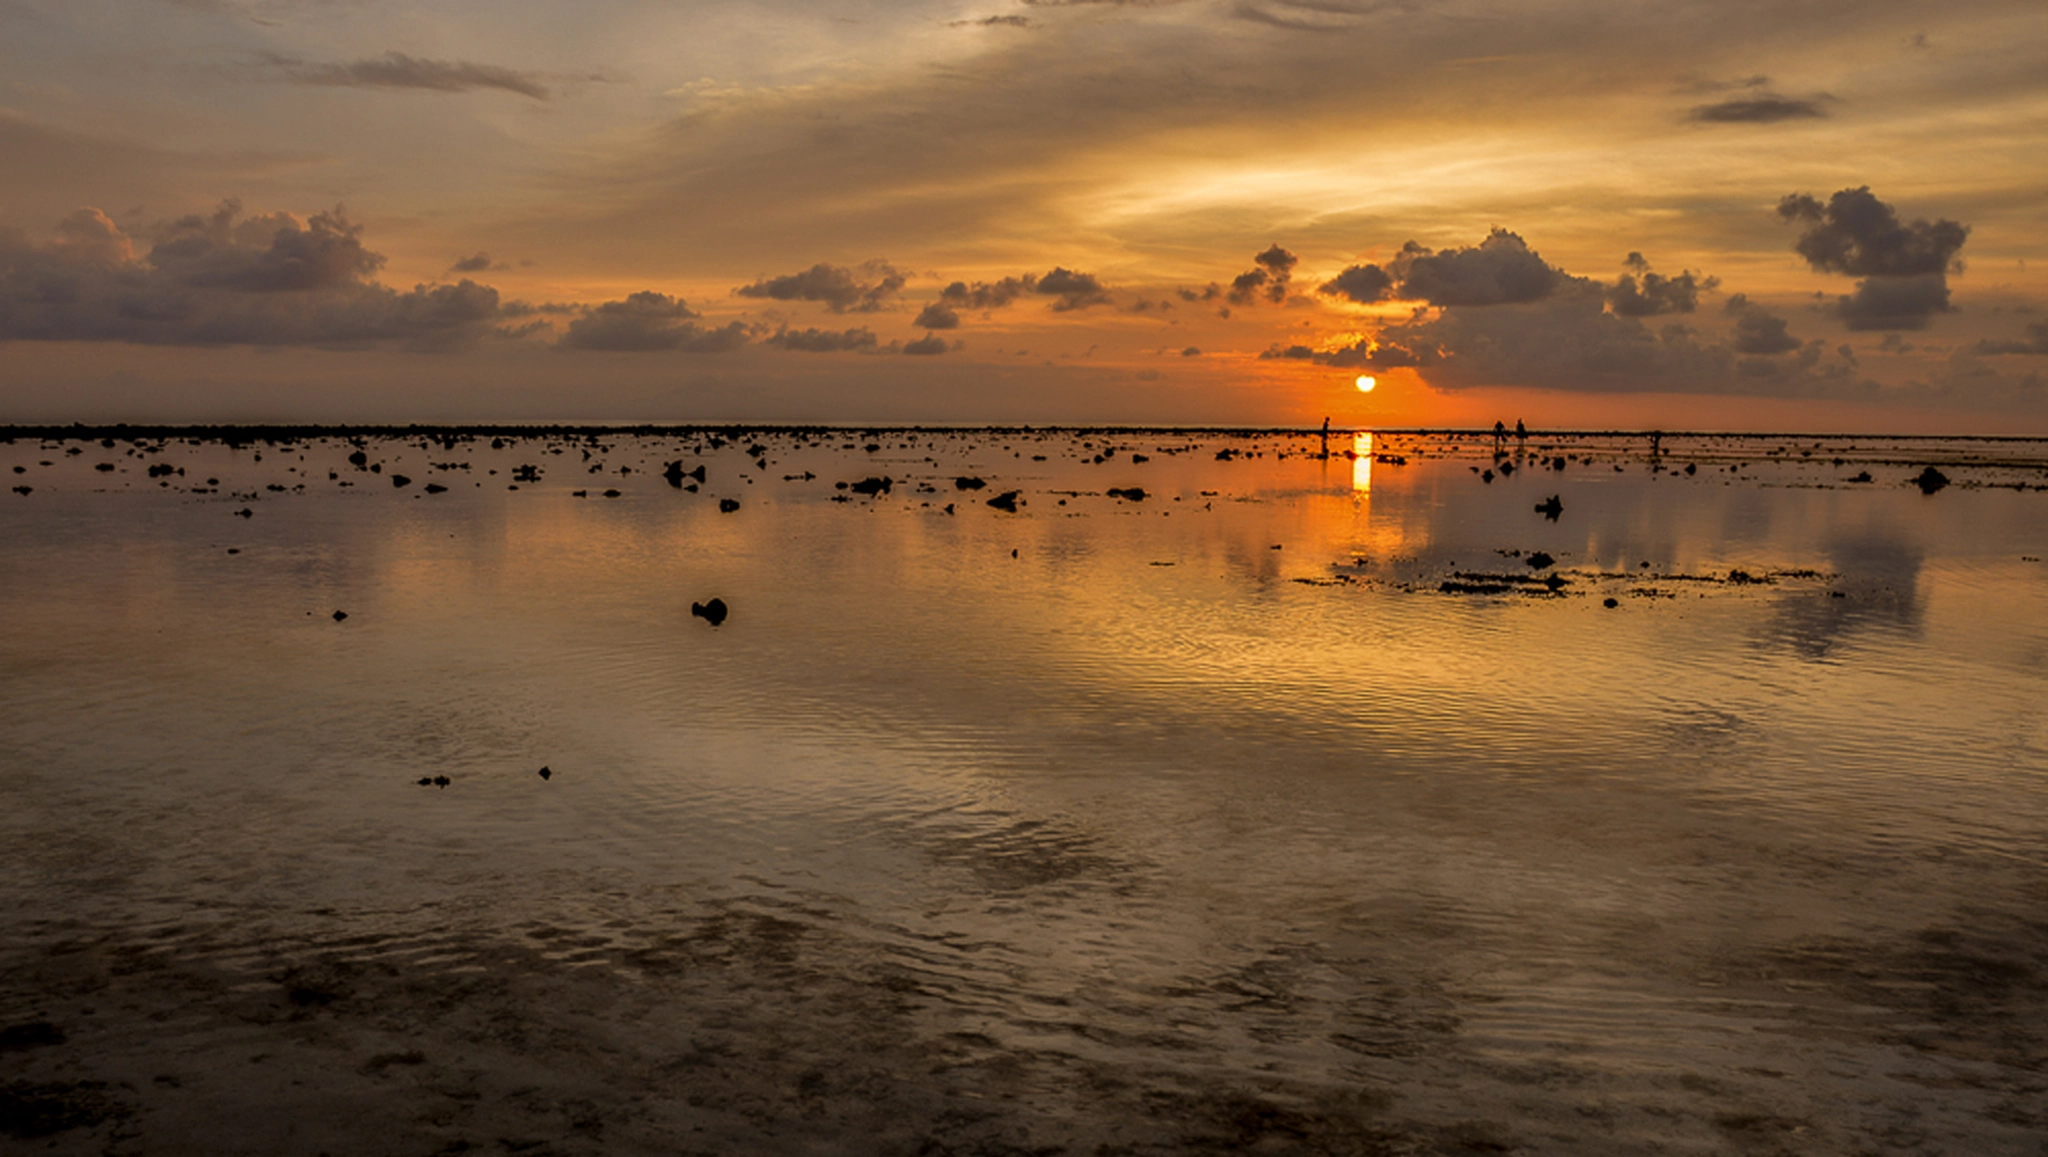 Nikon D5200 sample photo. Sunset lagoon photography